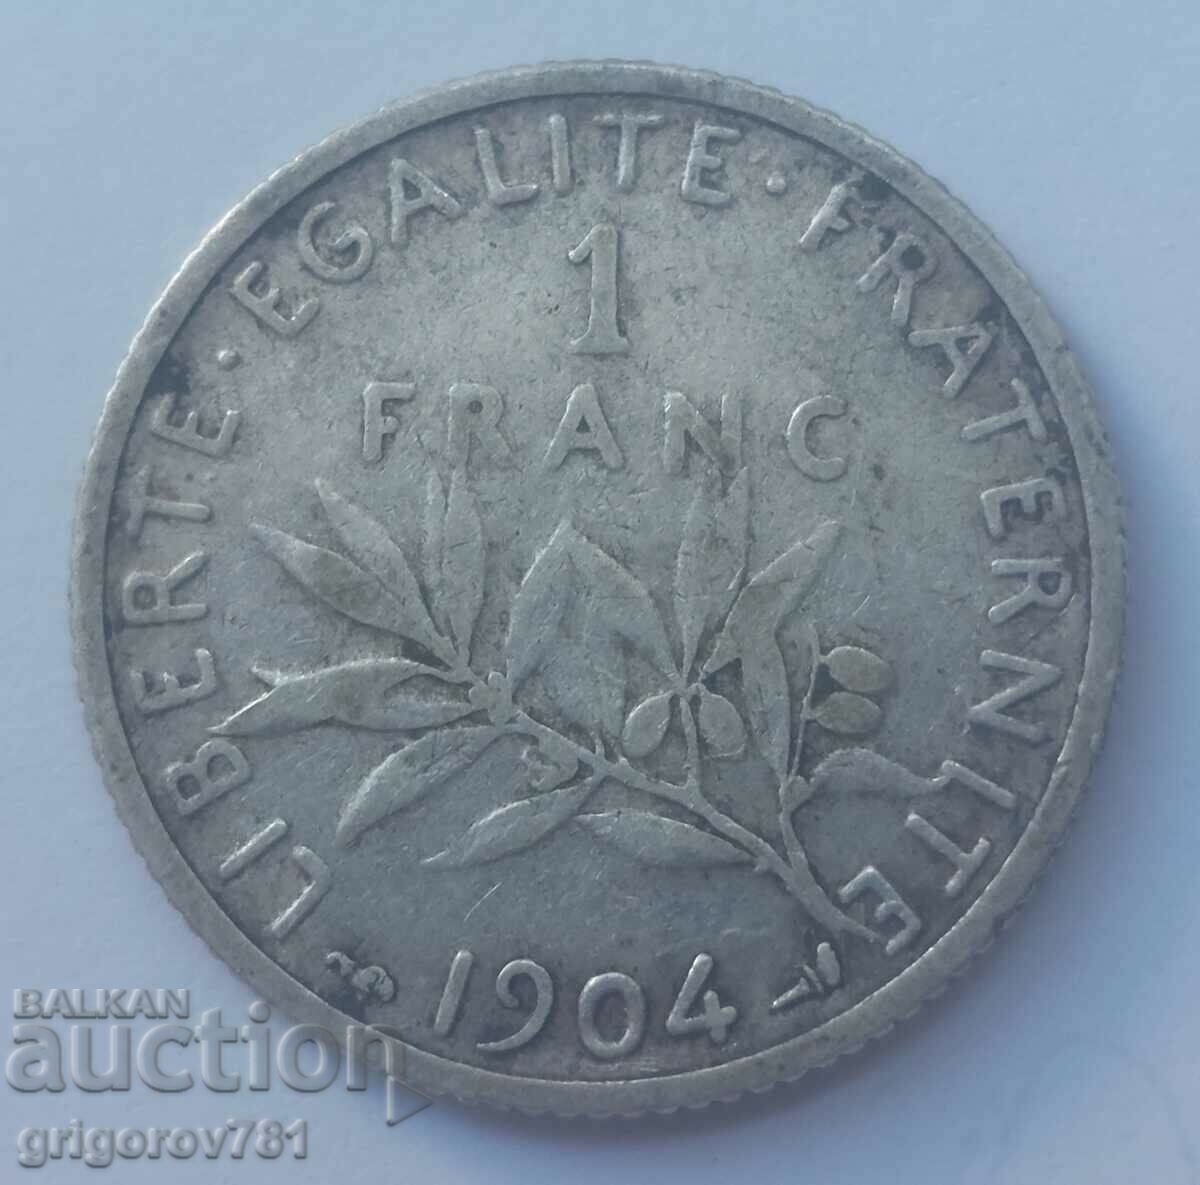 1 franc argint Franța 1904 - monedă de argint №29